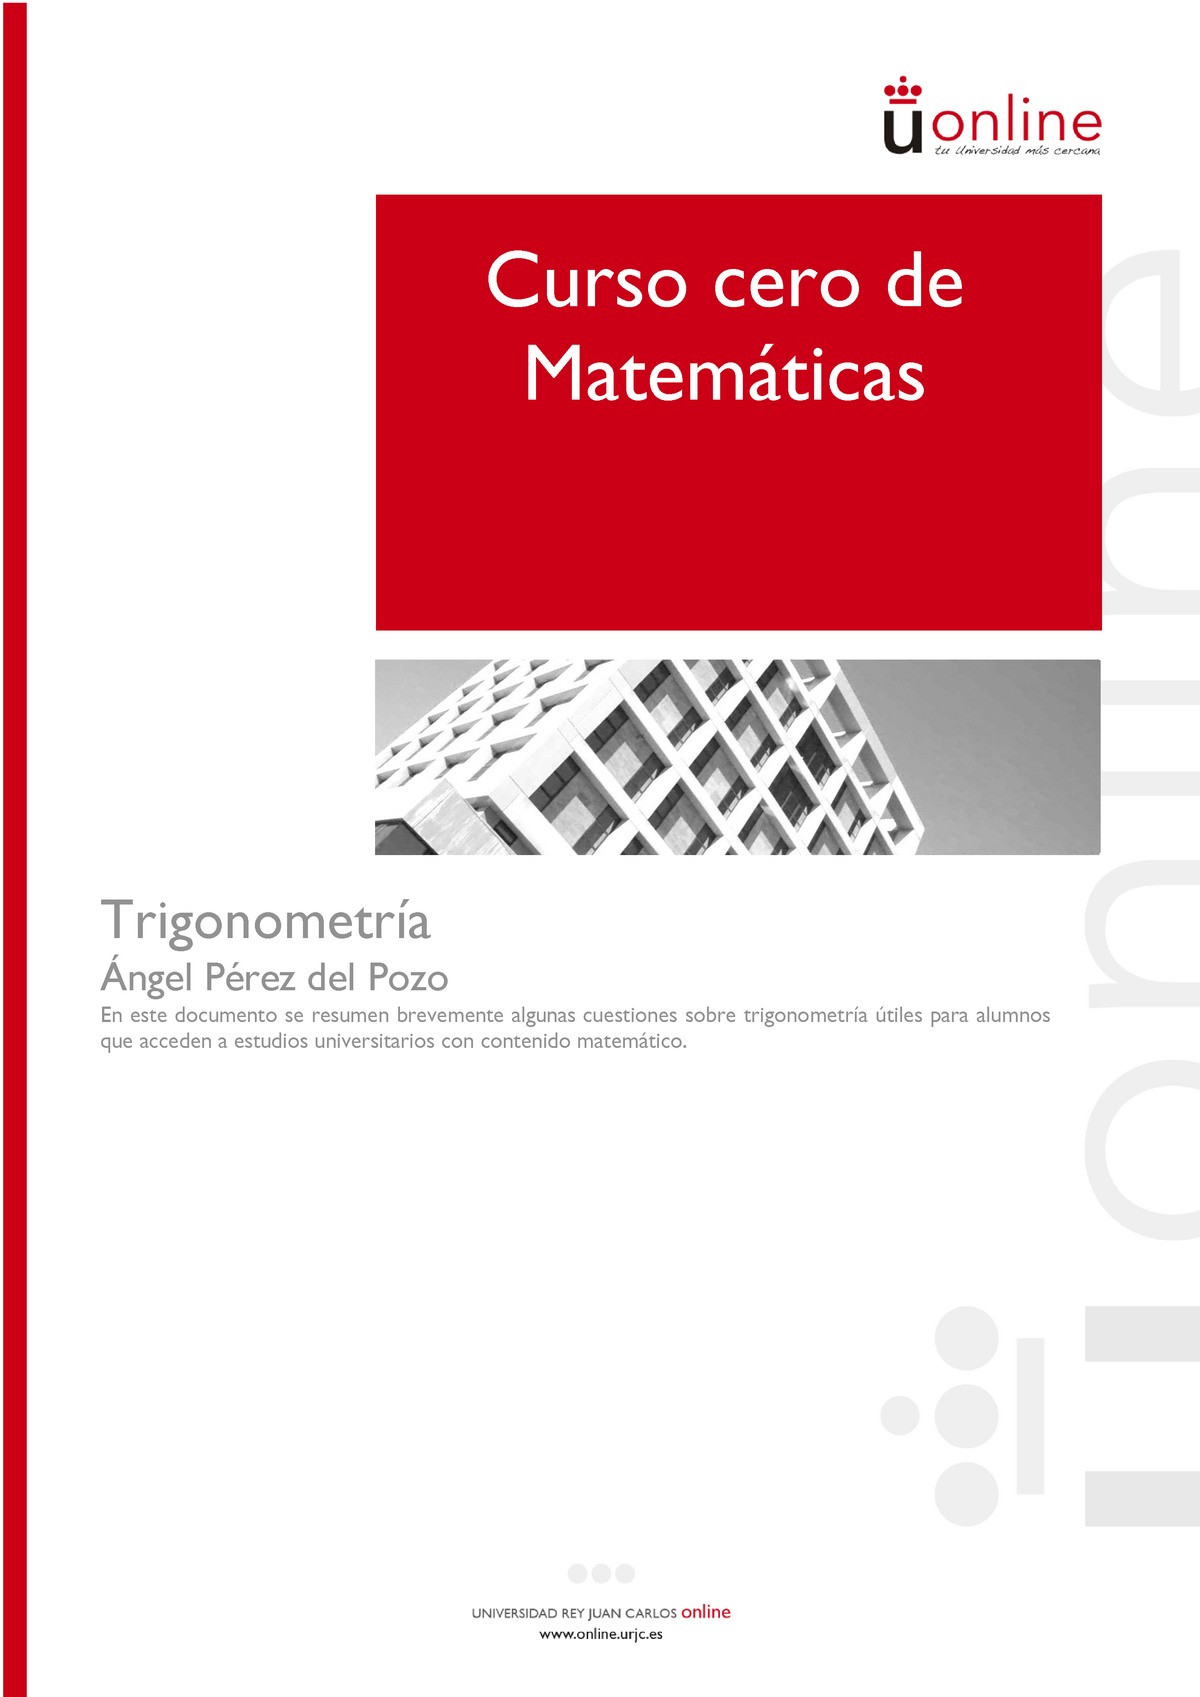 Trigonometria Teoría Y Ejercicios Curso Cero De Matemáticas Trigonometría Ángel Pérez Del Pozo 9493